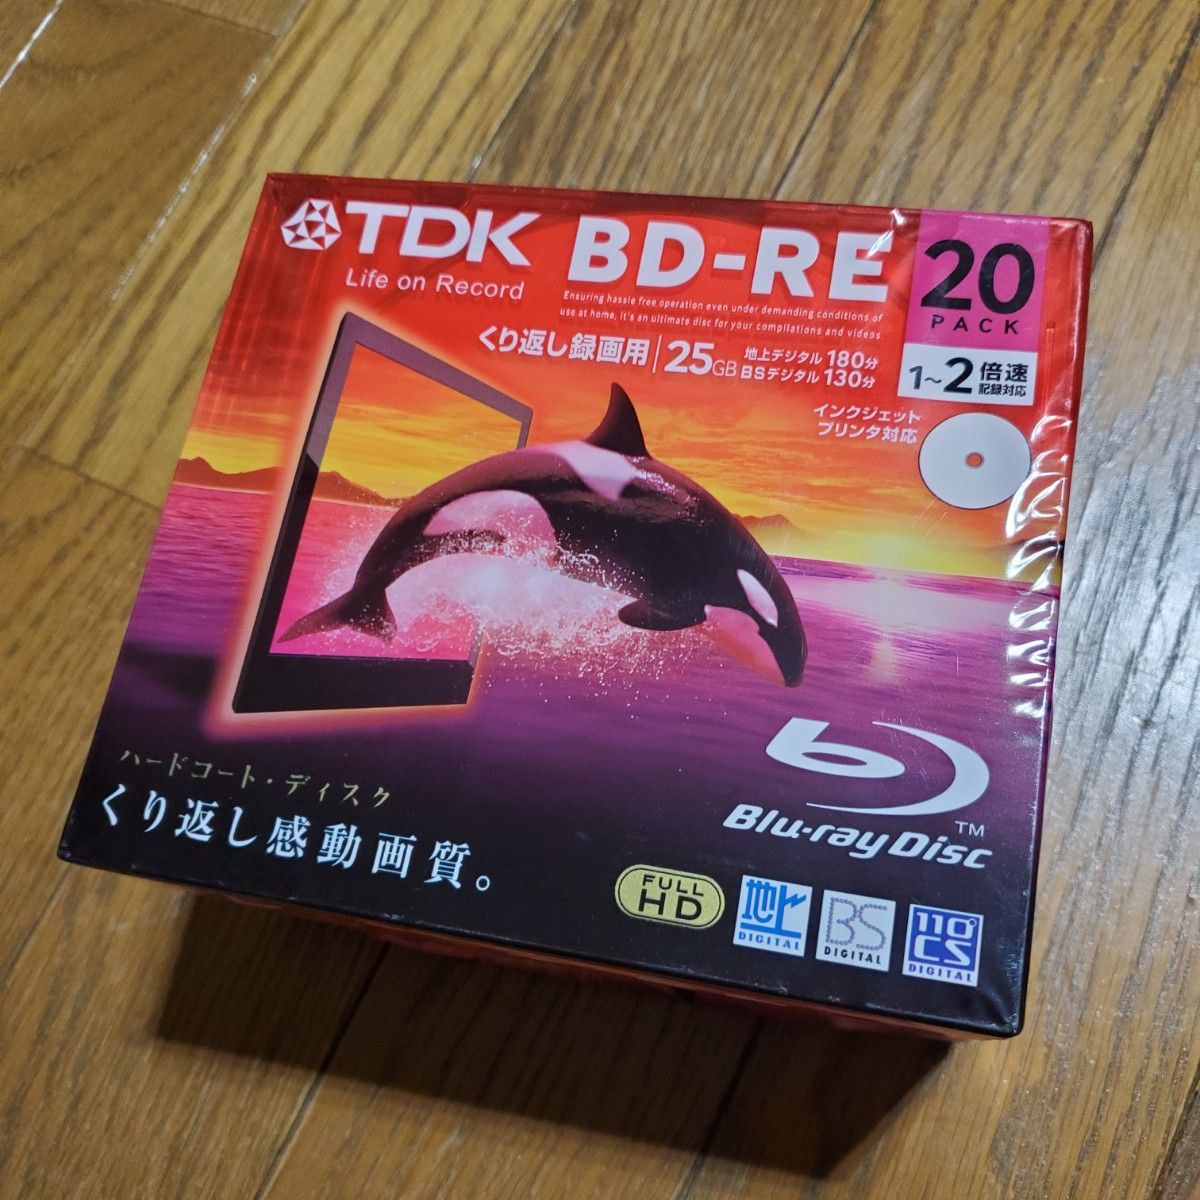 BD-RE TDK 録画用ブルーレイディスク